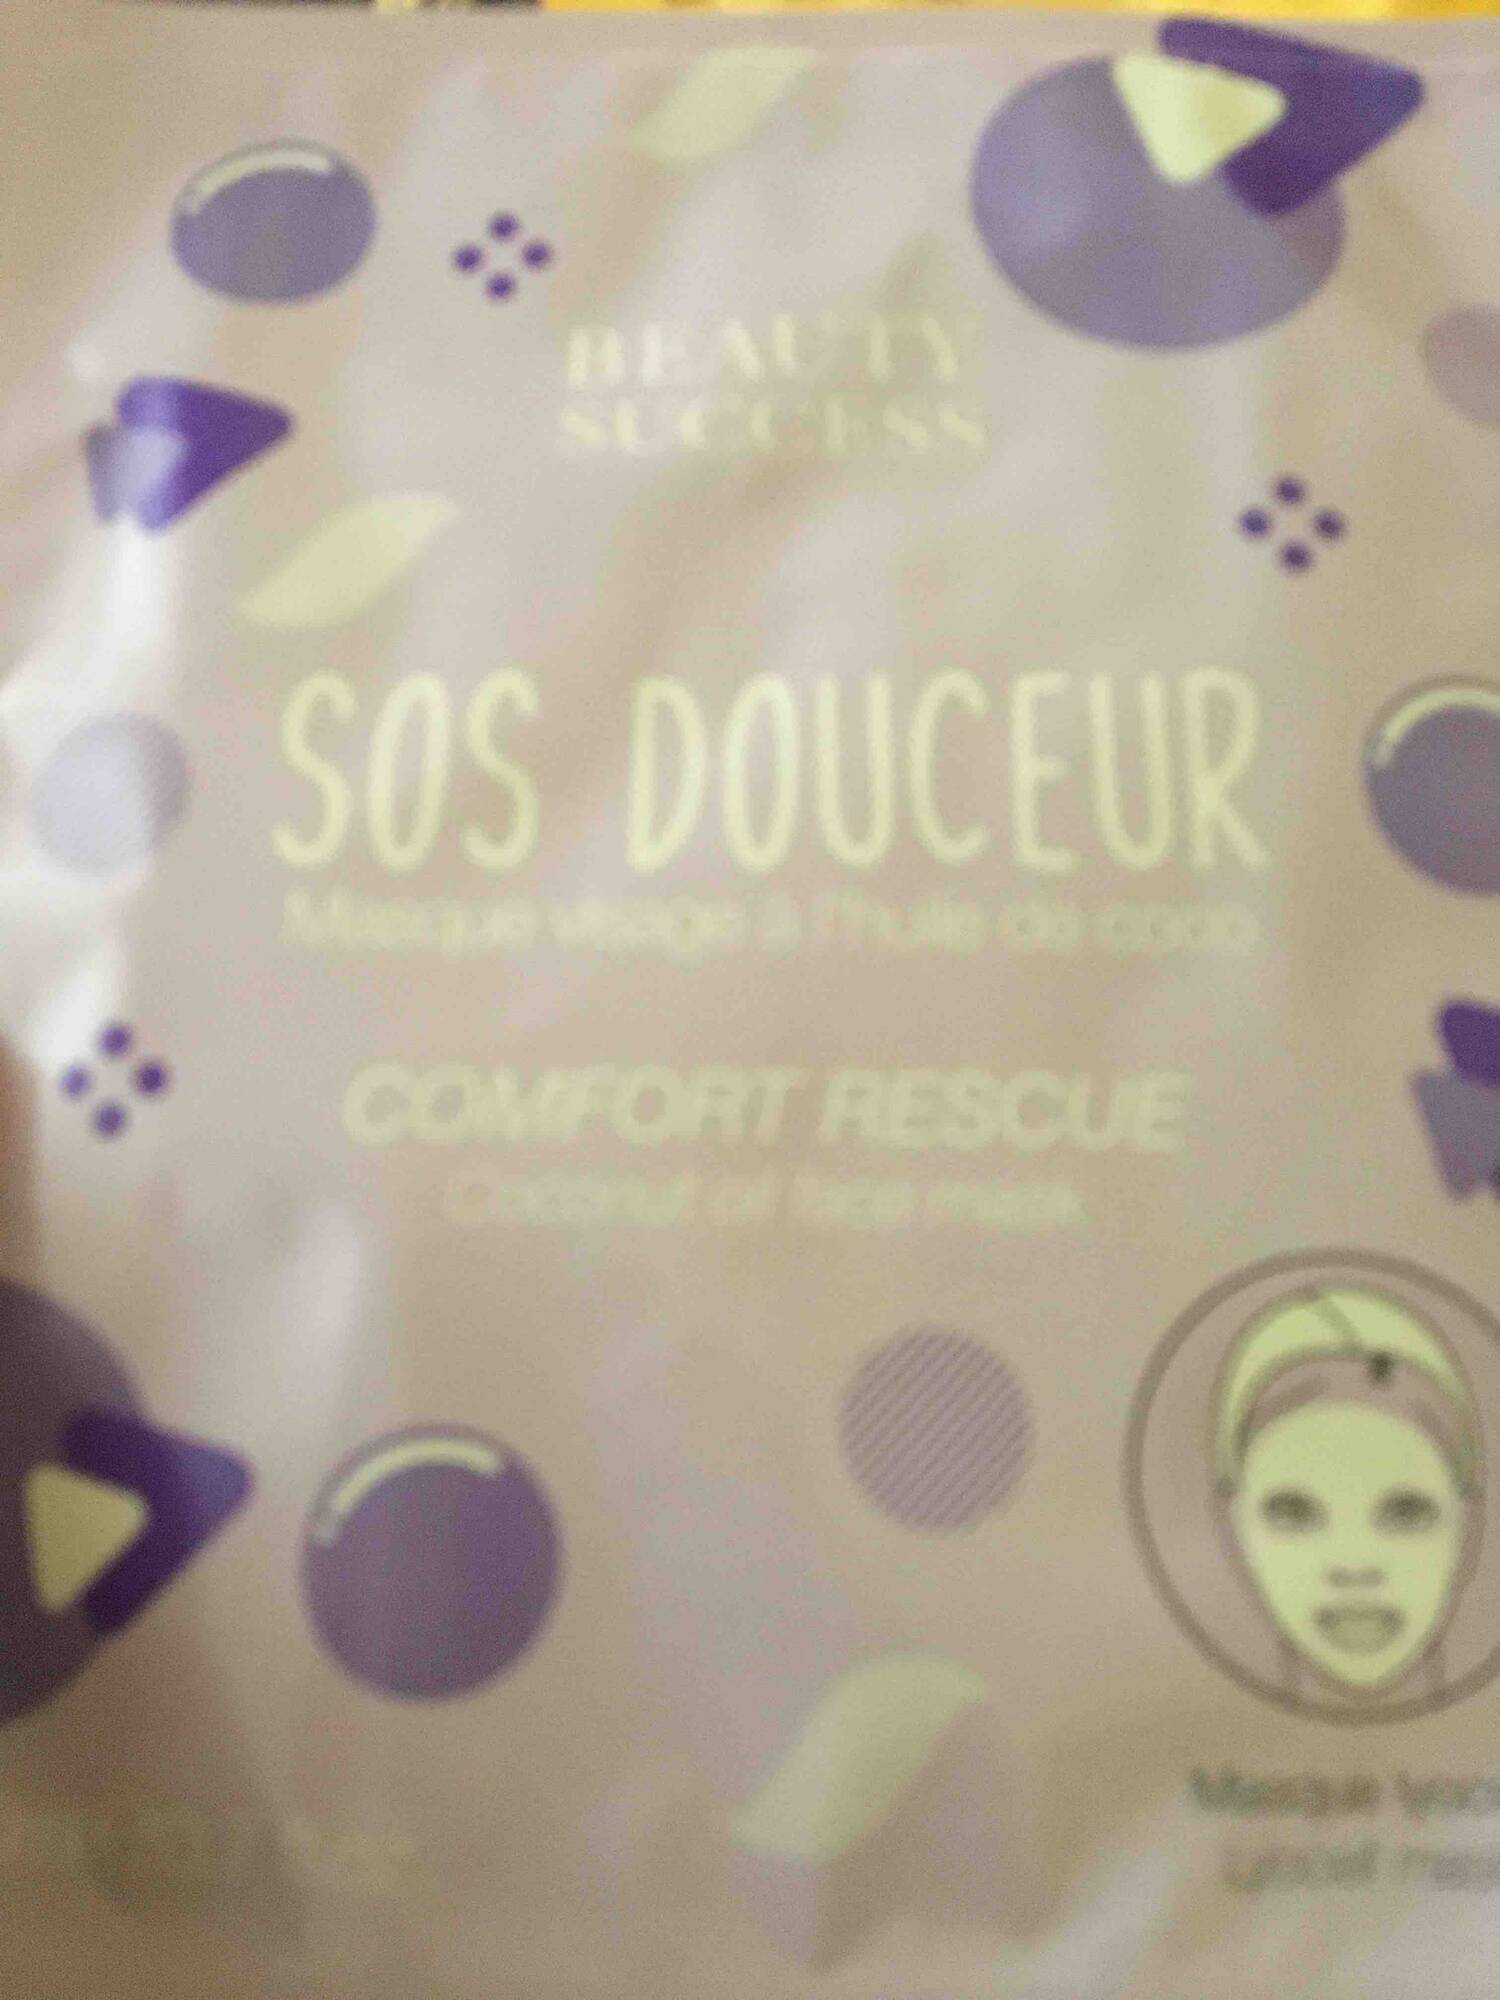 BEAUTY SUCCESS - SOS Douceur - Masque visage à l'huile de coco